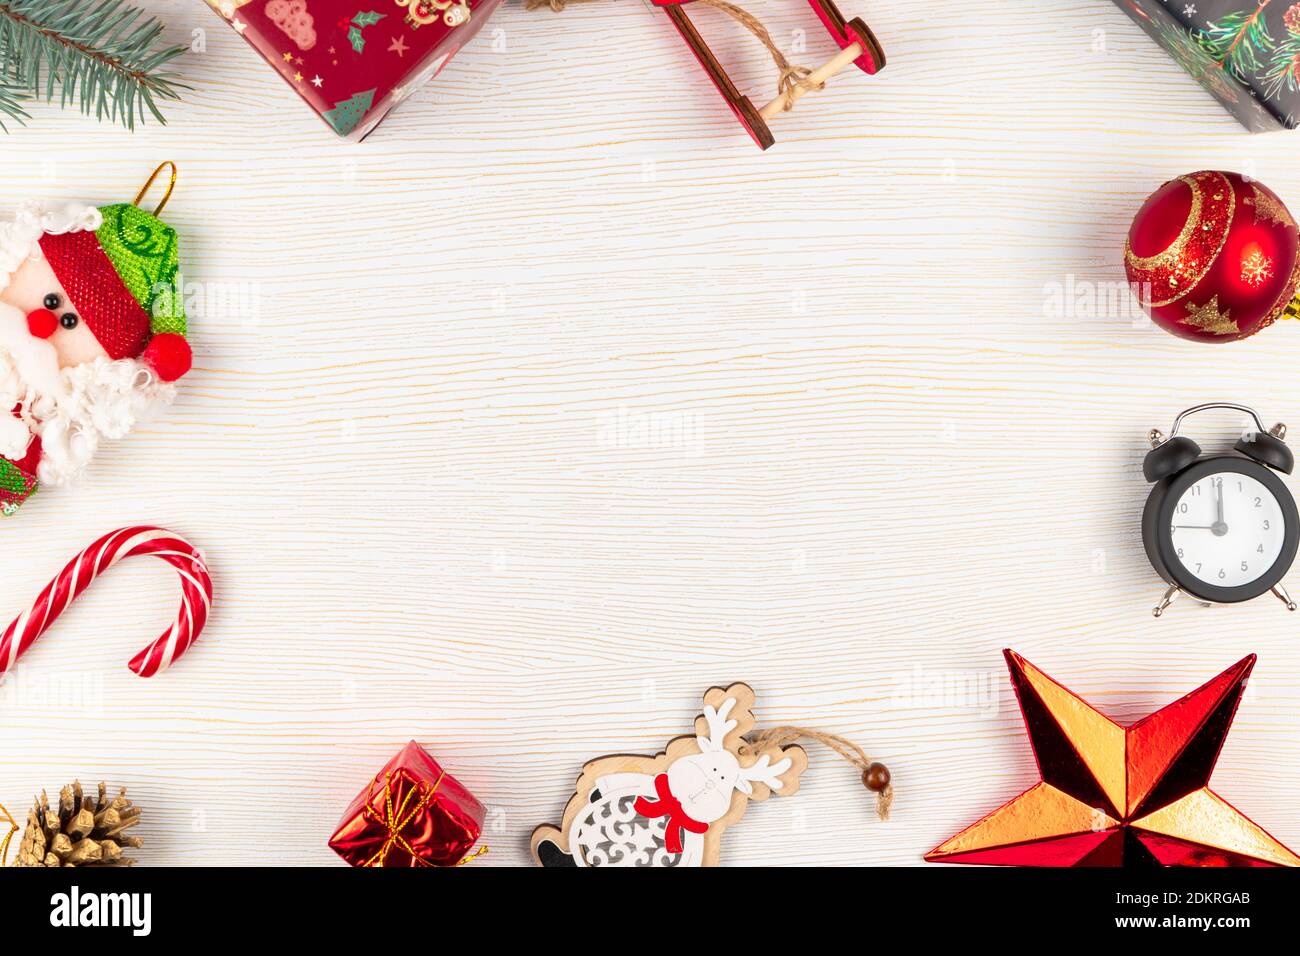 weihnachtsmann Schlitten, Geschenkboxen, weihnachtsspielzeug, Fichtenzweig, Wecker und Stern auf weißem Hintergrund Stockfoto